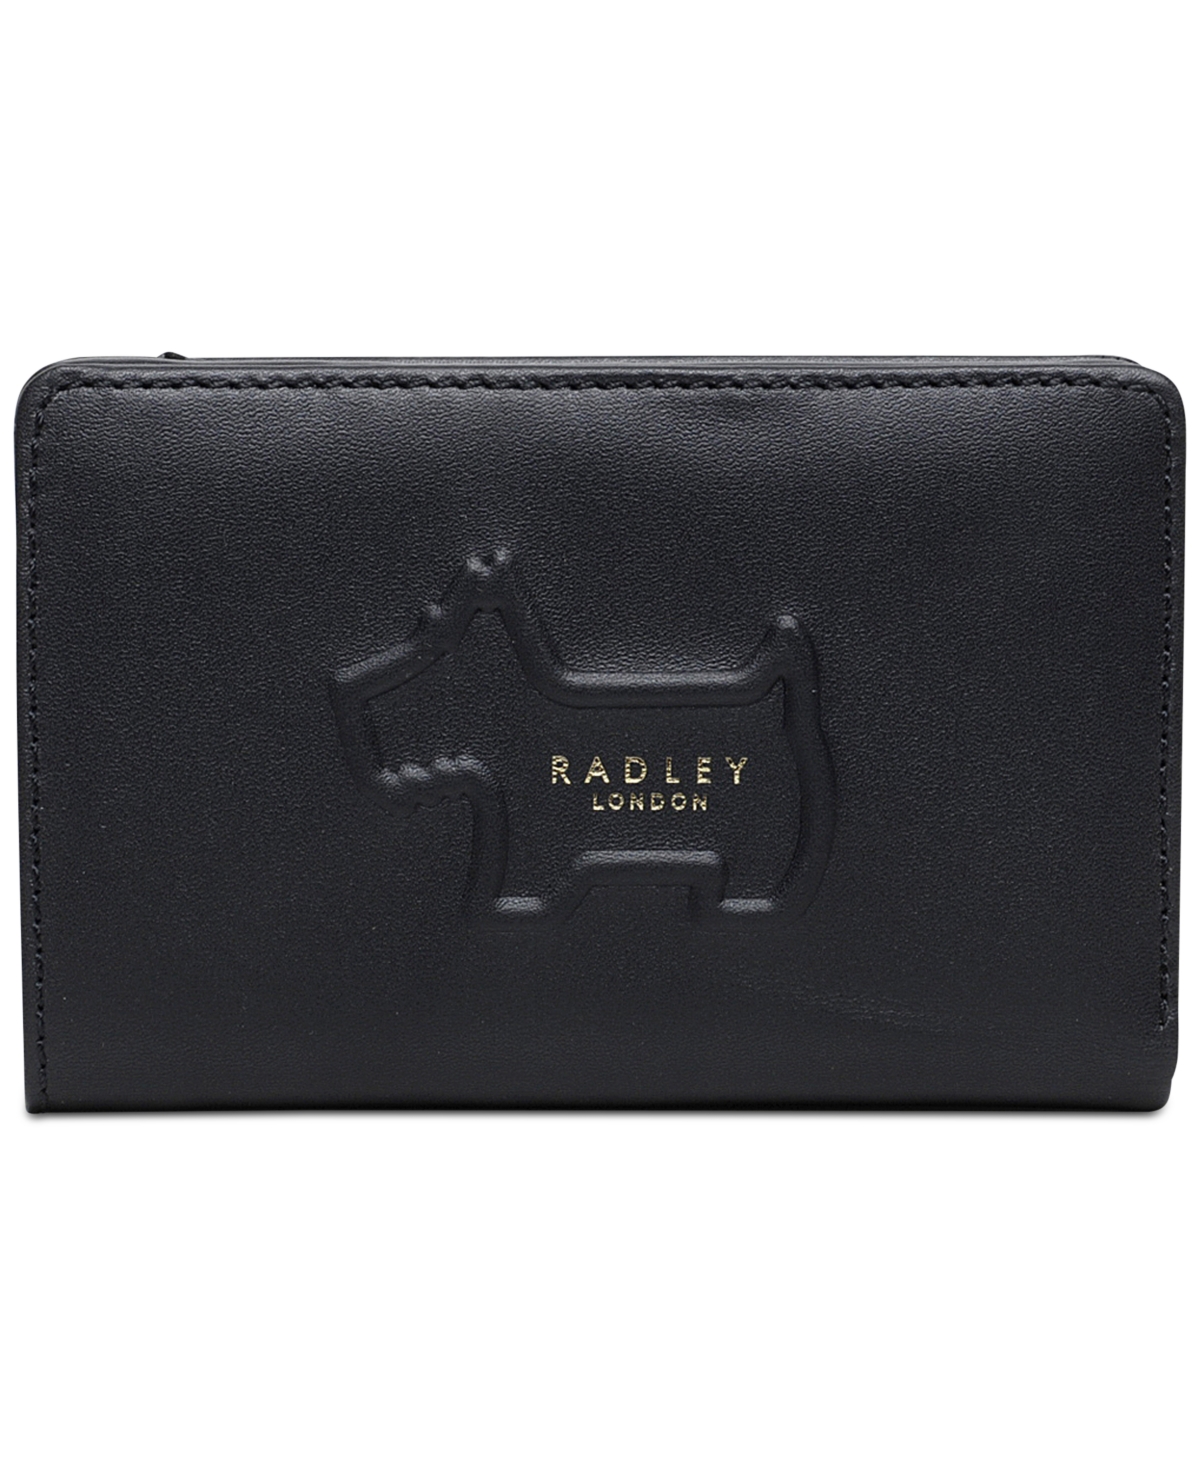 Radley London Radley Shadow Medium Zip-top Leather Wallet In Black,gold